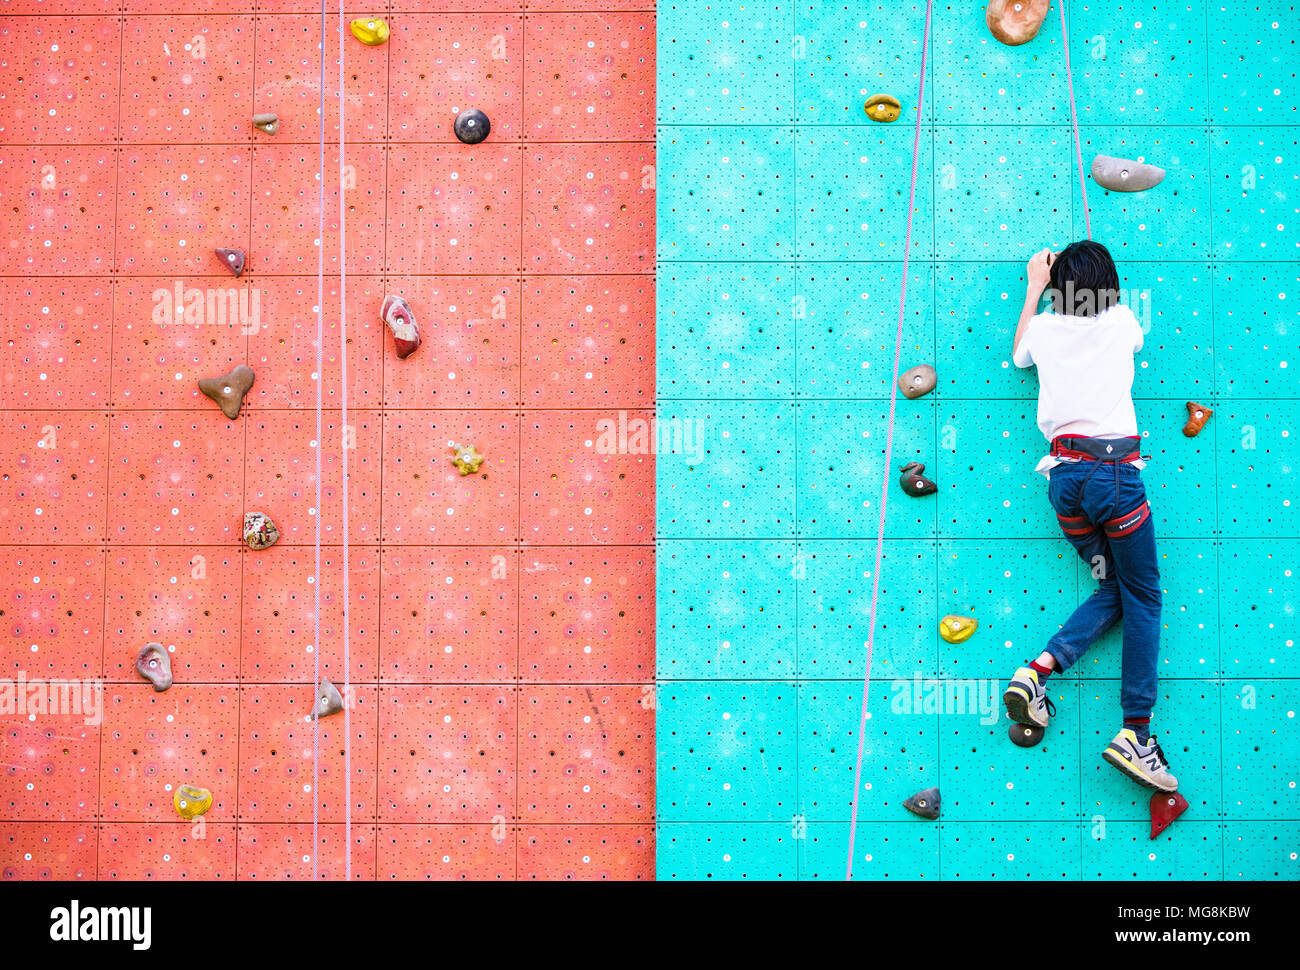 Roma, Italia, 25 de abril de 2018. Joven la escalada en muro artificial de actividad de ocio durante el día de la tierra en el espacio deportivo al aire libre del parque Foto de stock